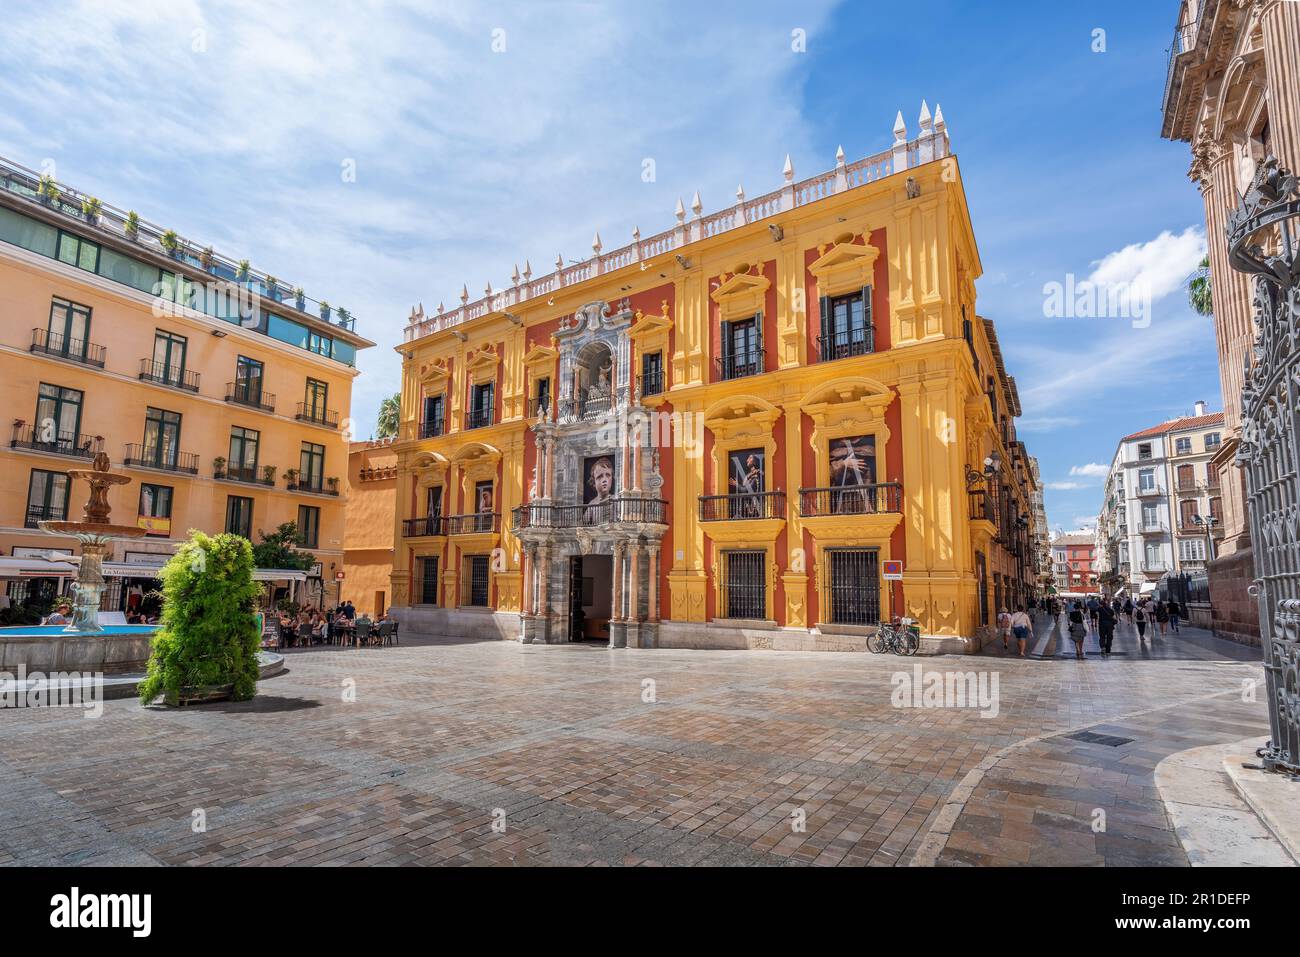 Bischofspalast (Bischofspalast) an der Plaza del Obispo (Bischofsplatz) - Malaga, Andalusien, Spanien Stockfoto